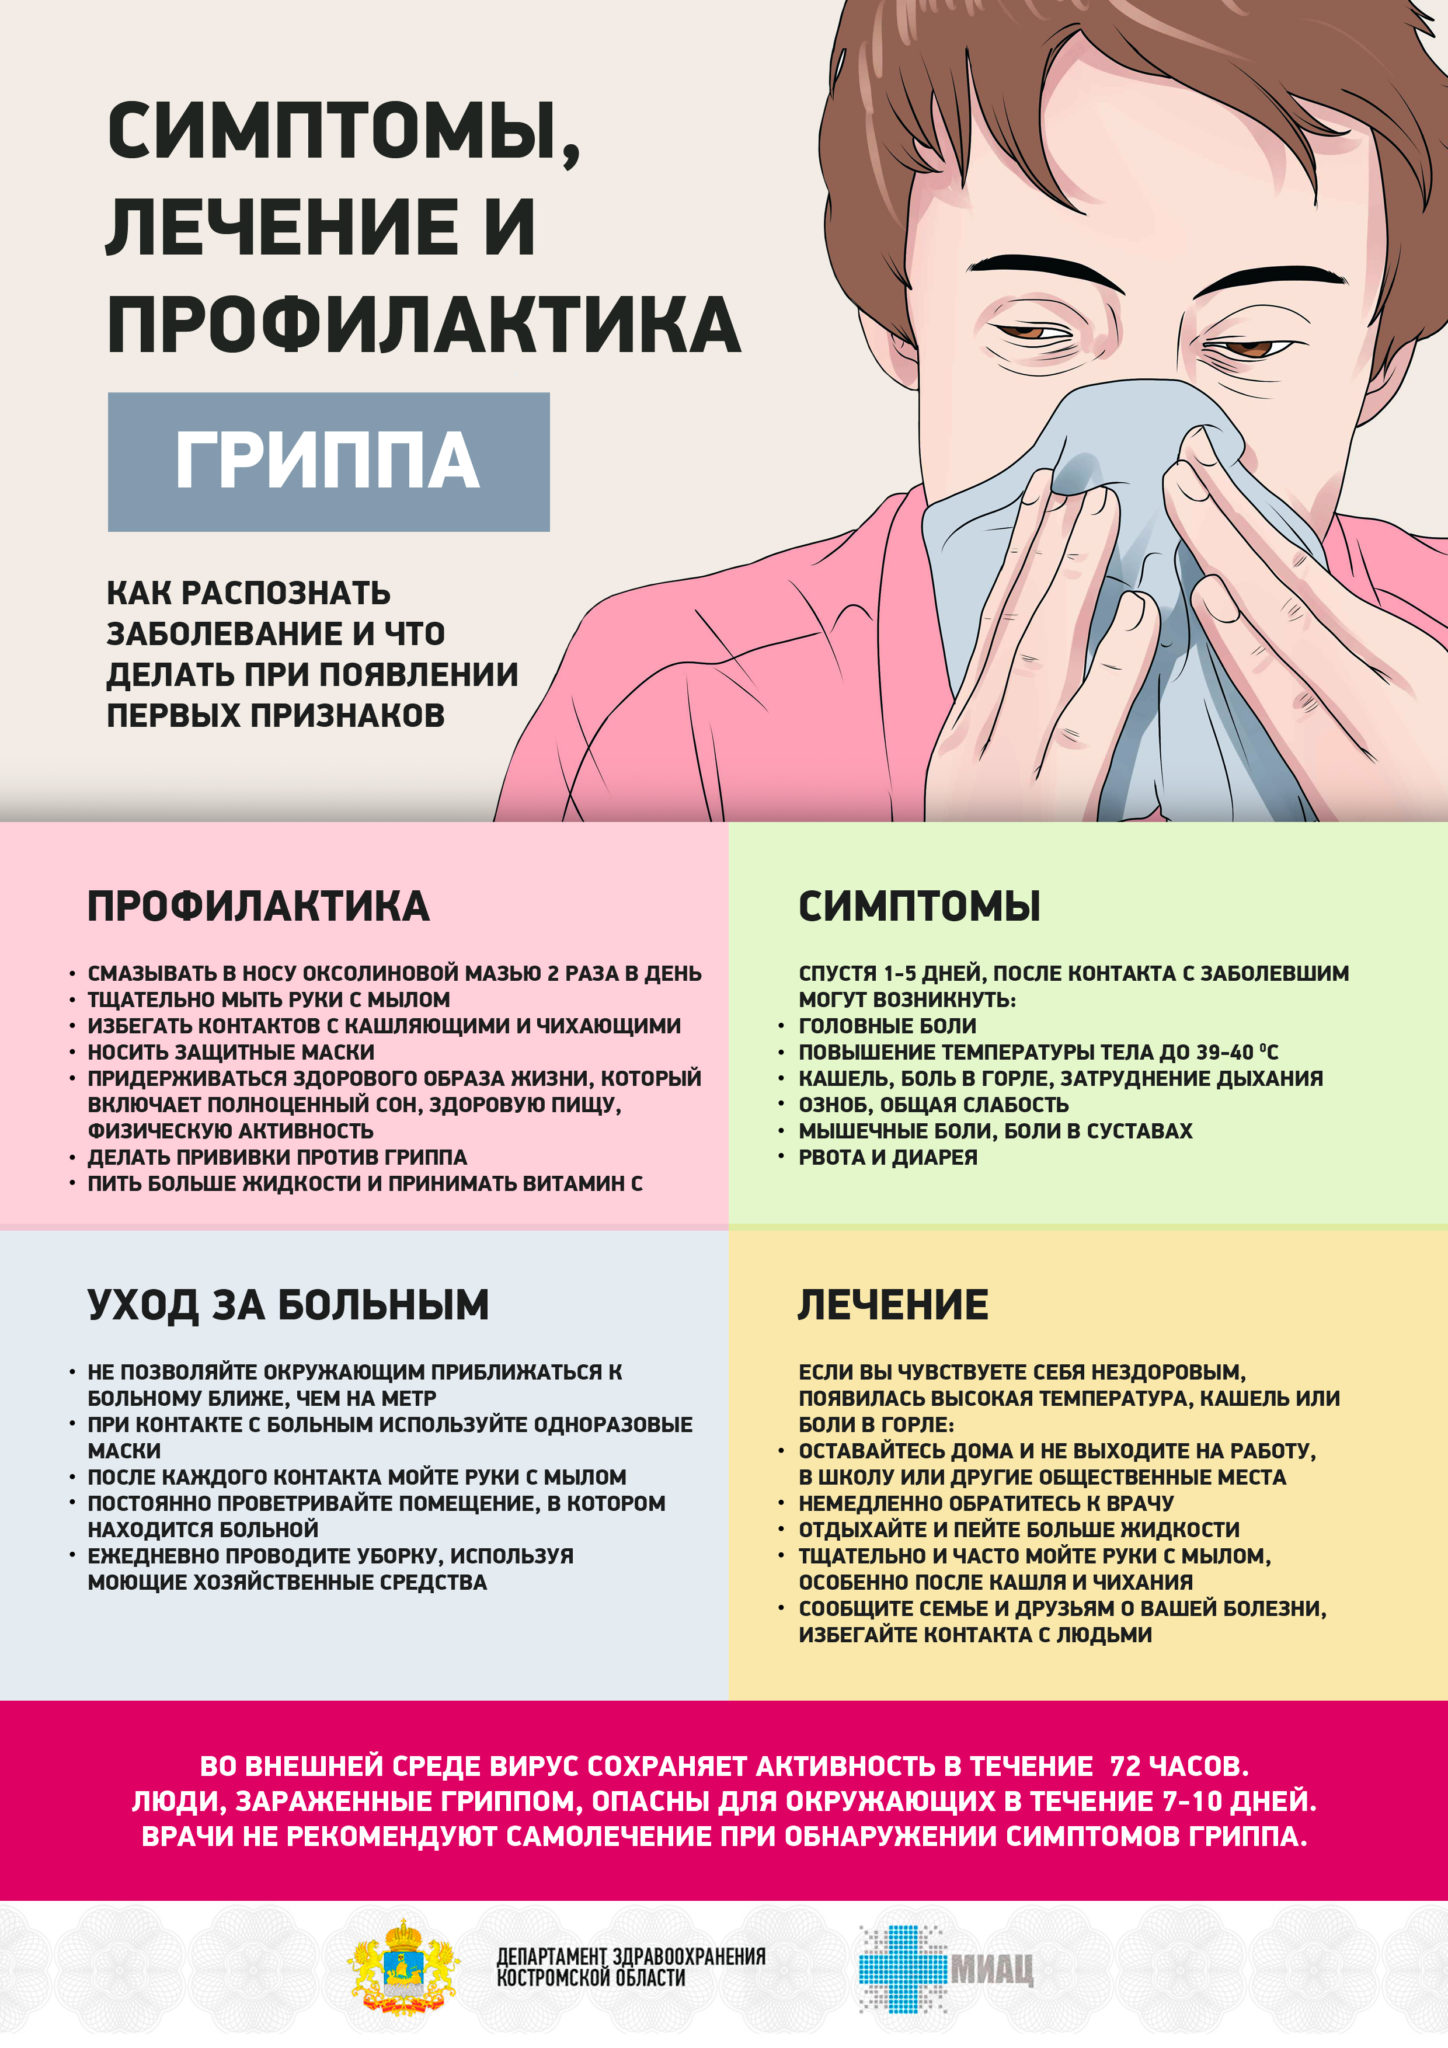 Причины гриппа